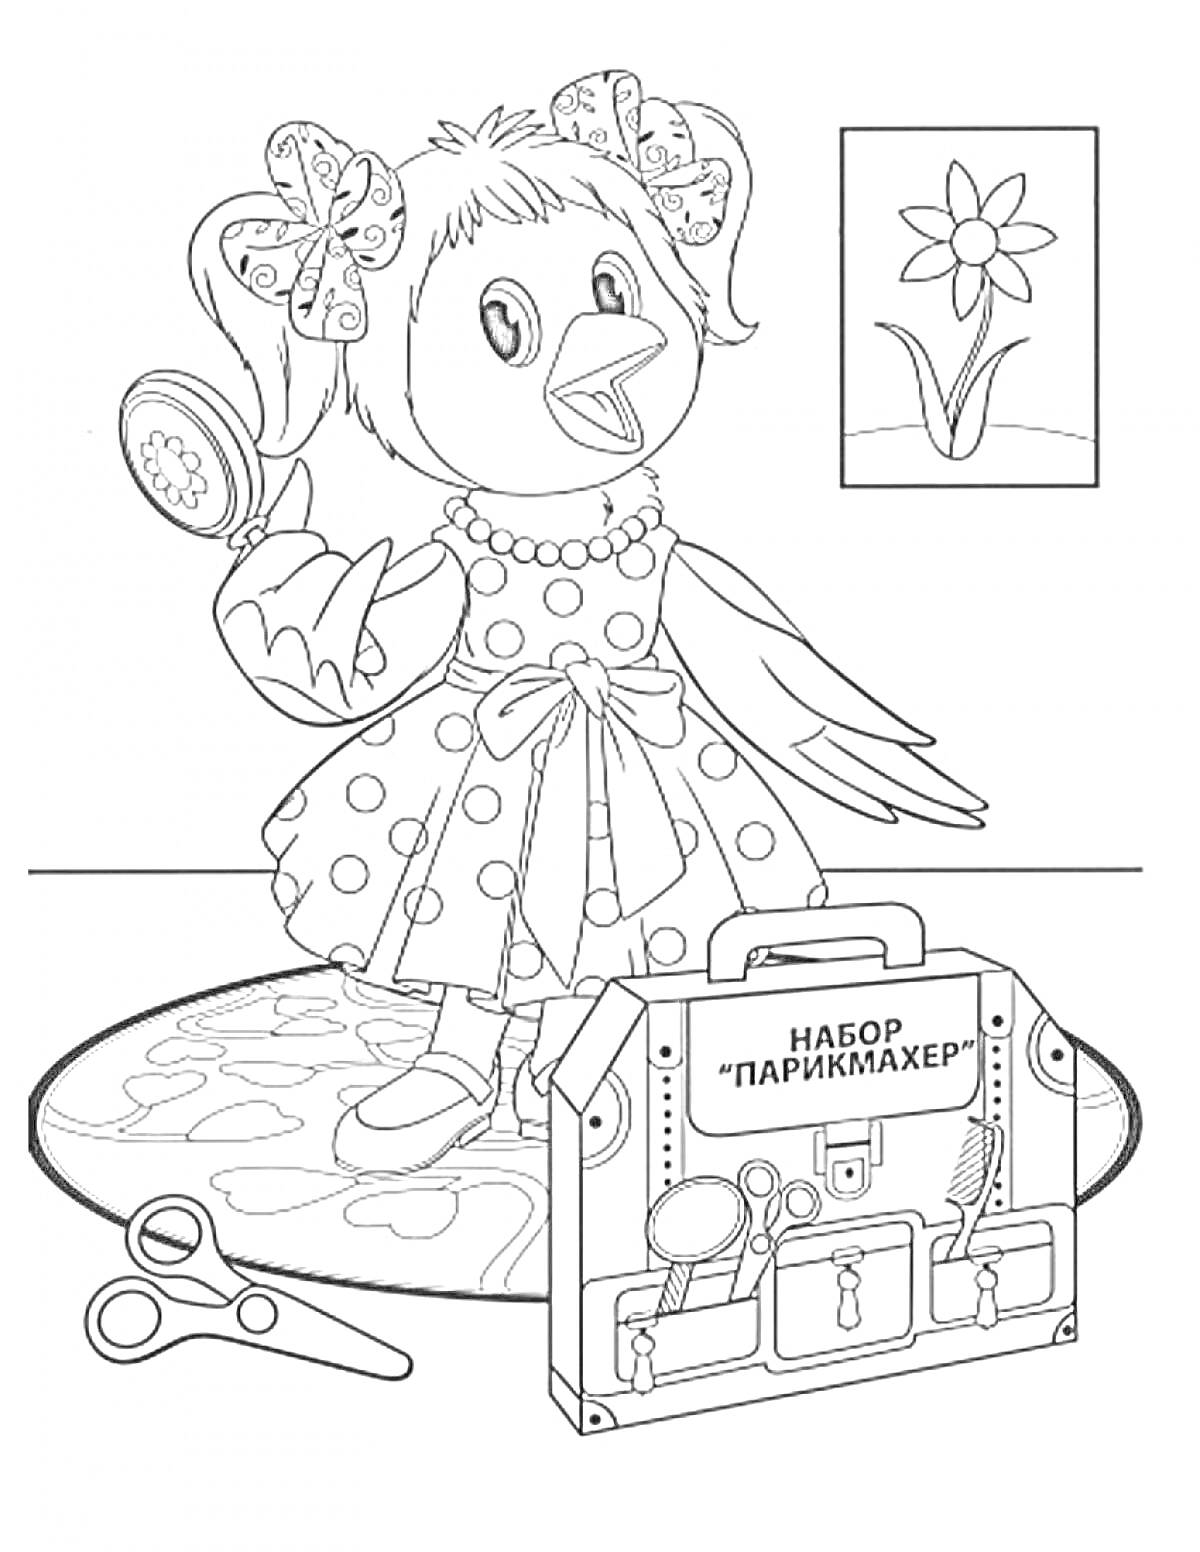 Птичка с бантом в платье, набор парикмахера, ножницы и картина с цветком